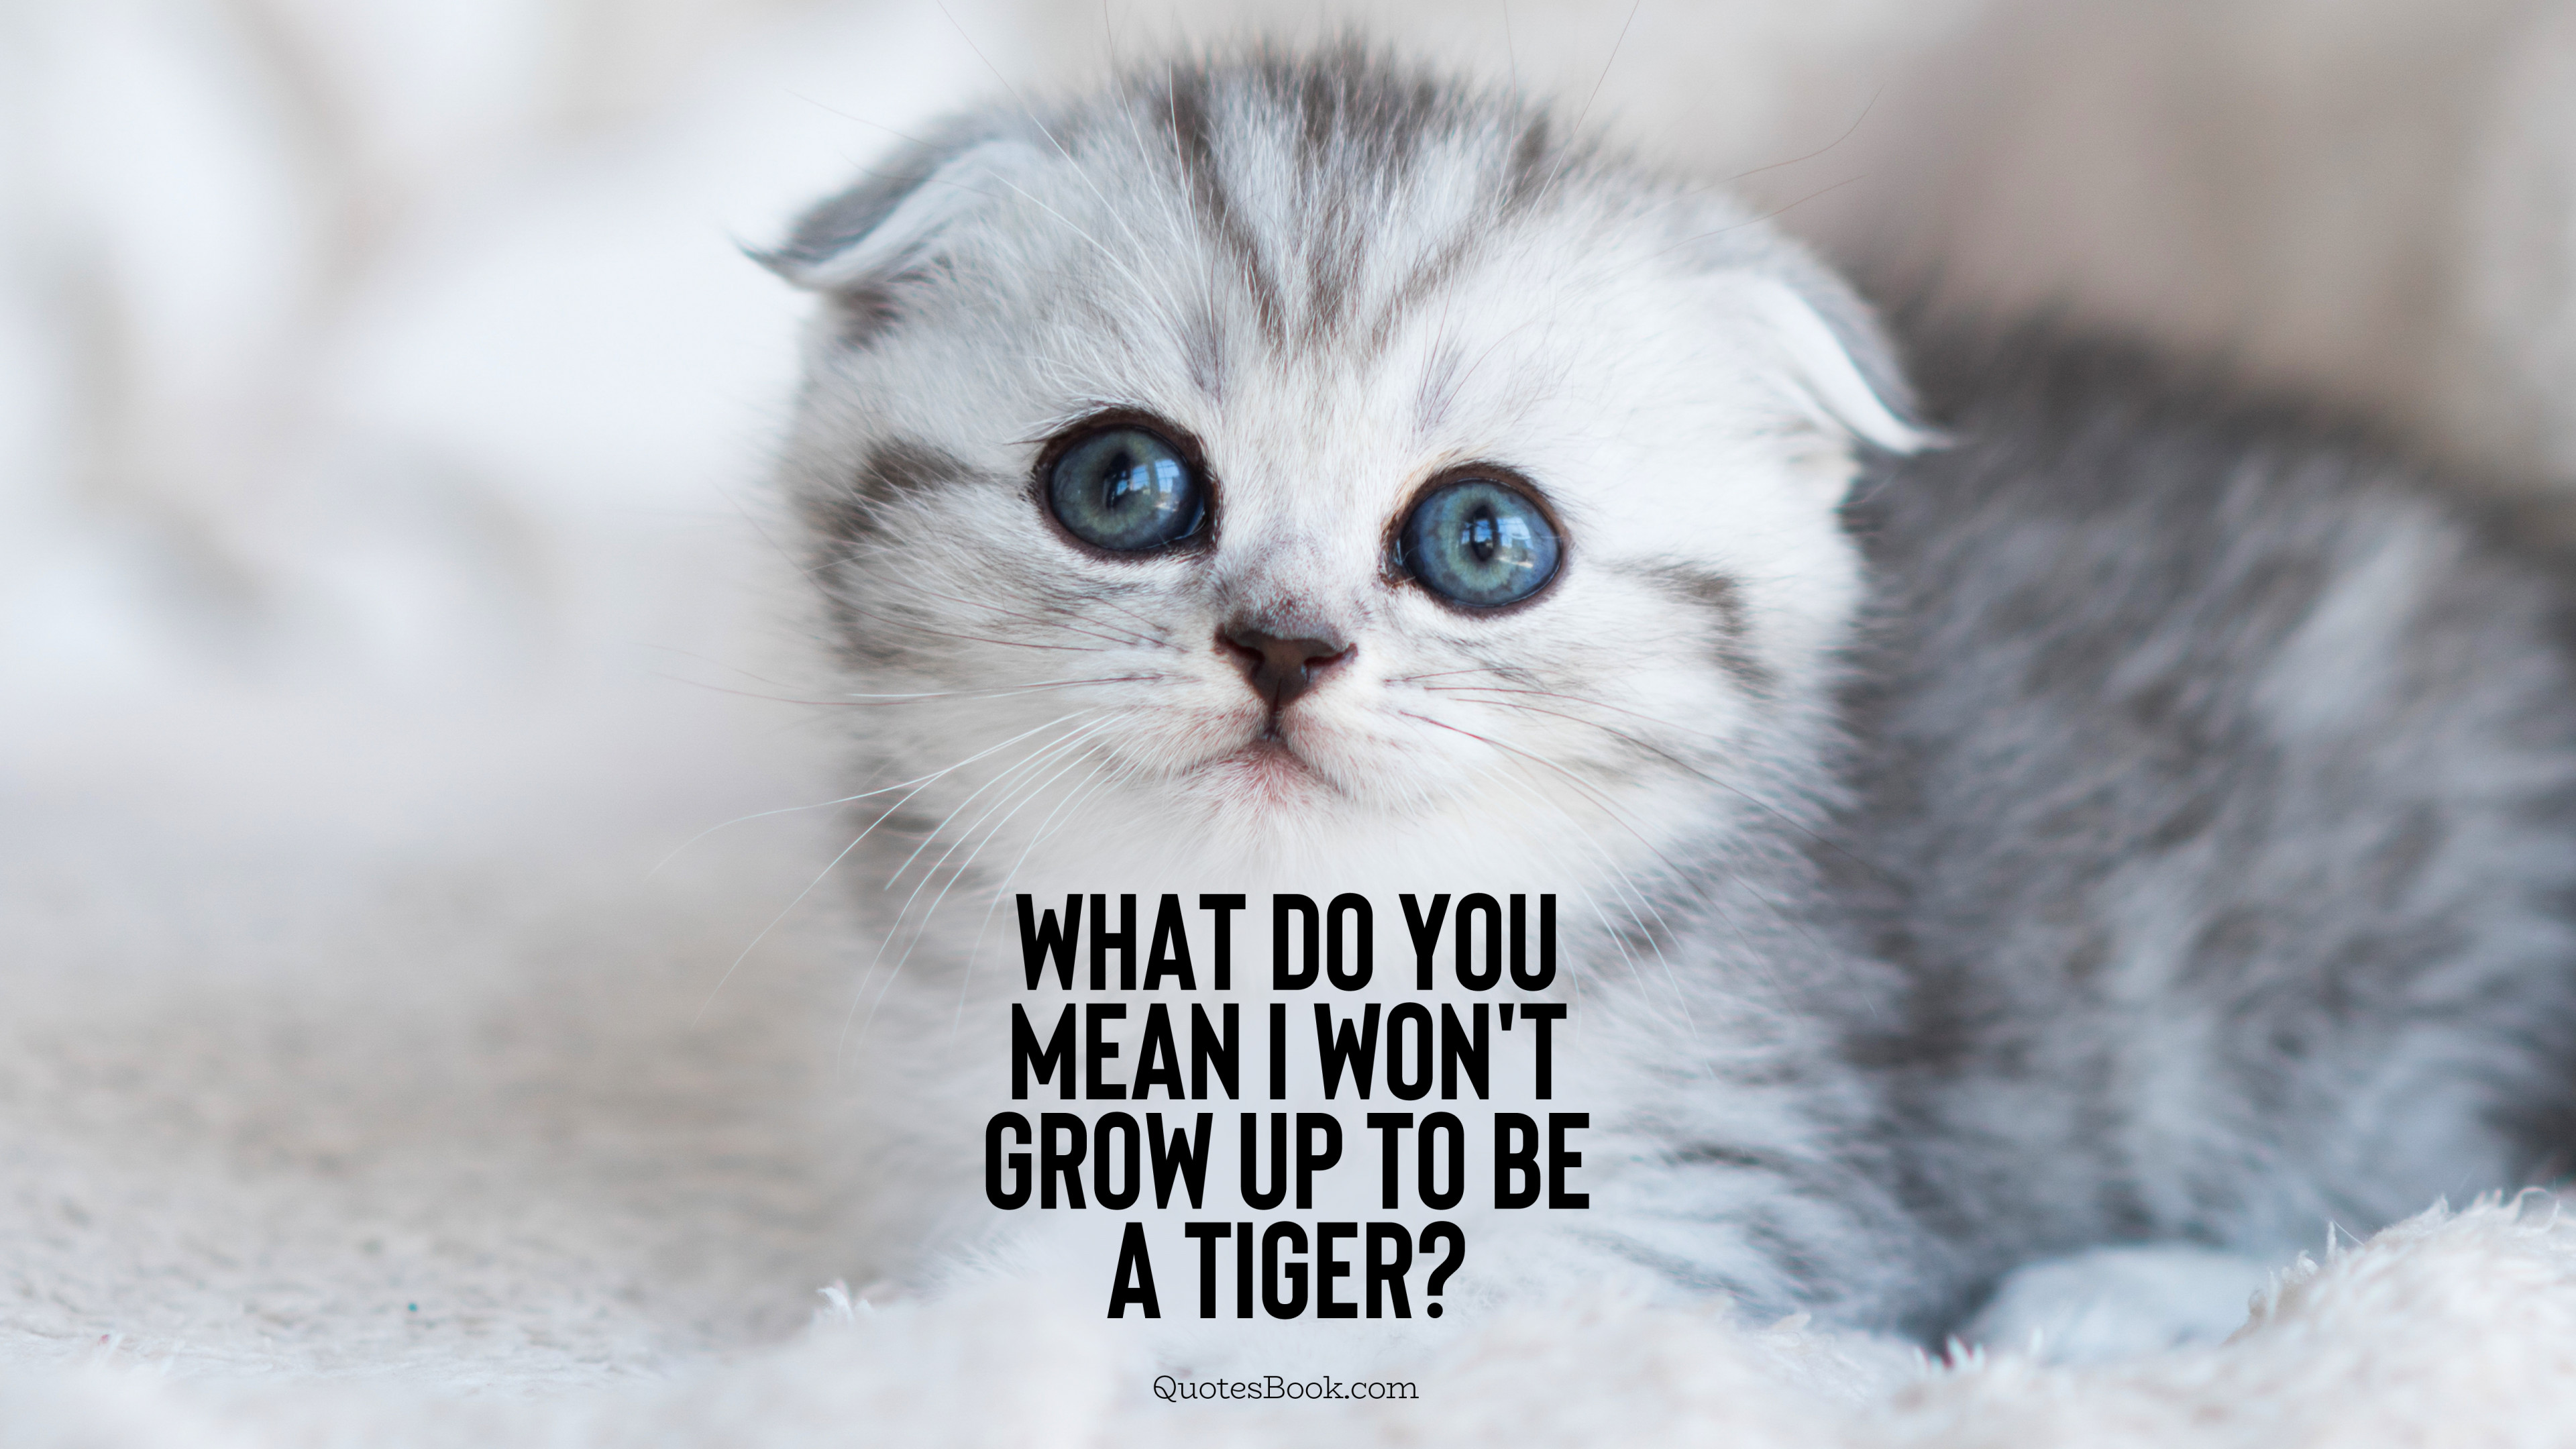 What do you mean I won't grow up to be a tiger? - QuotesBook